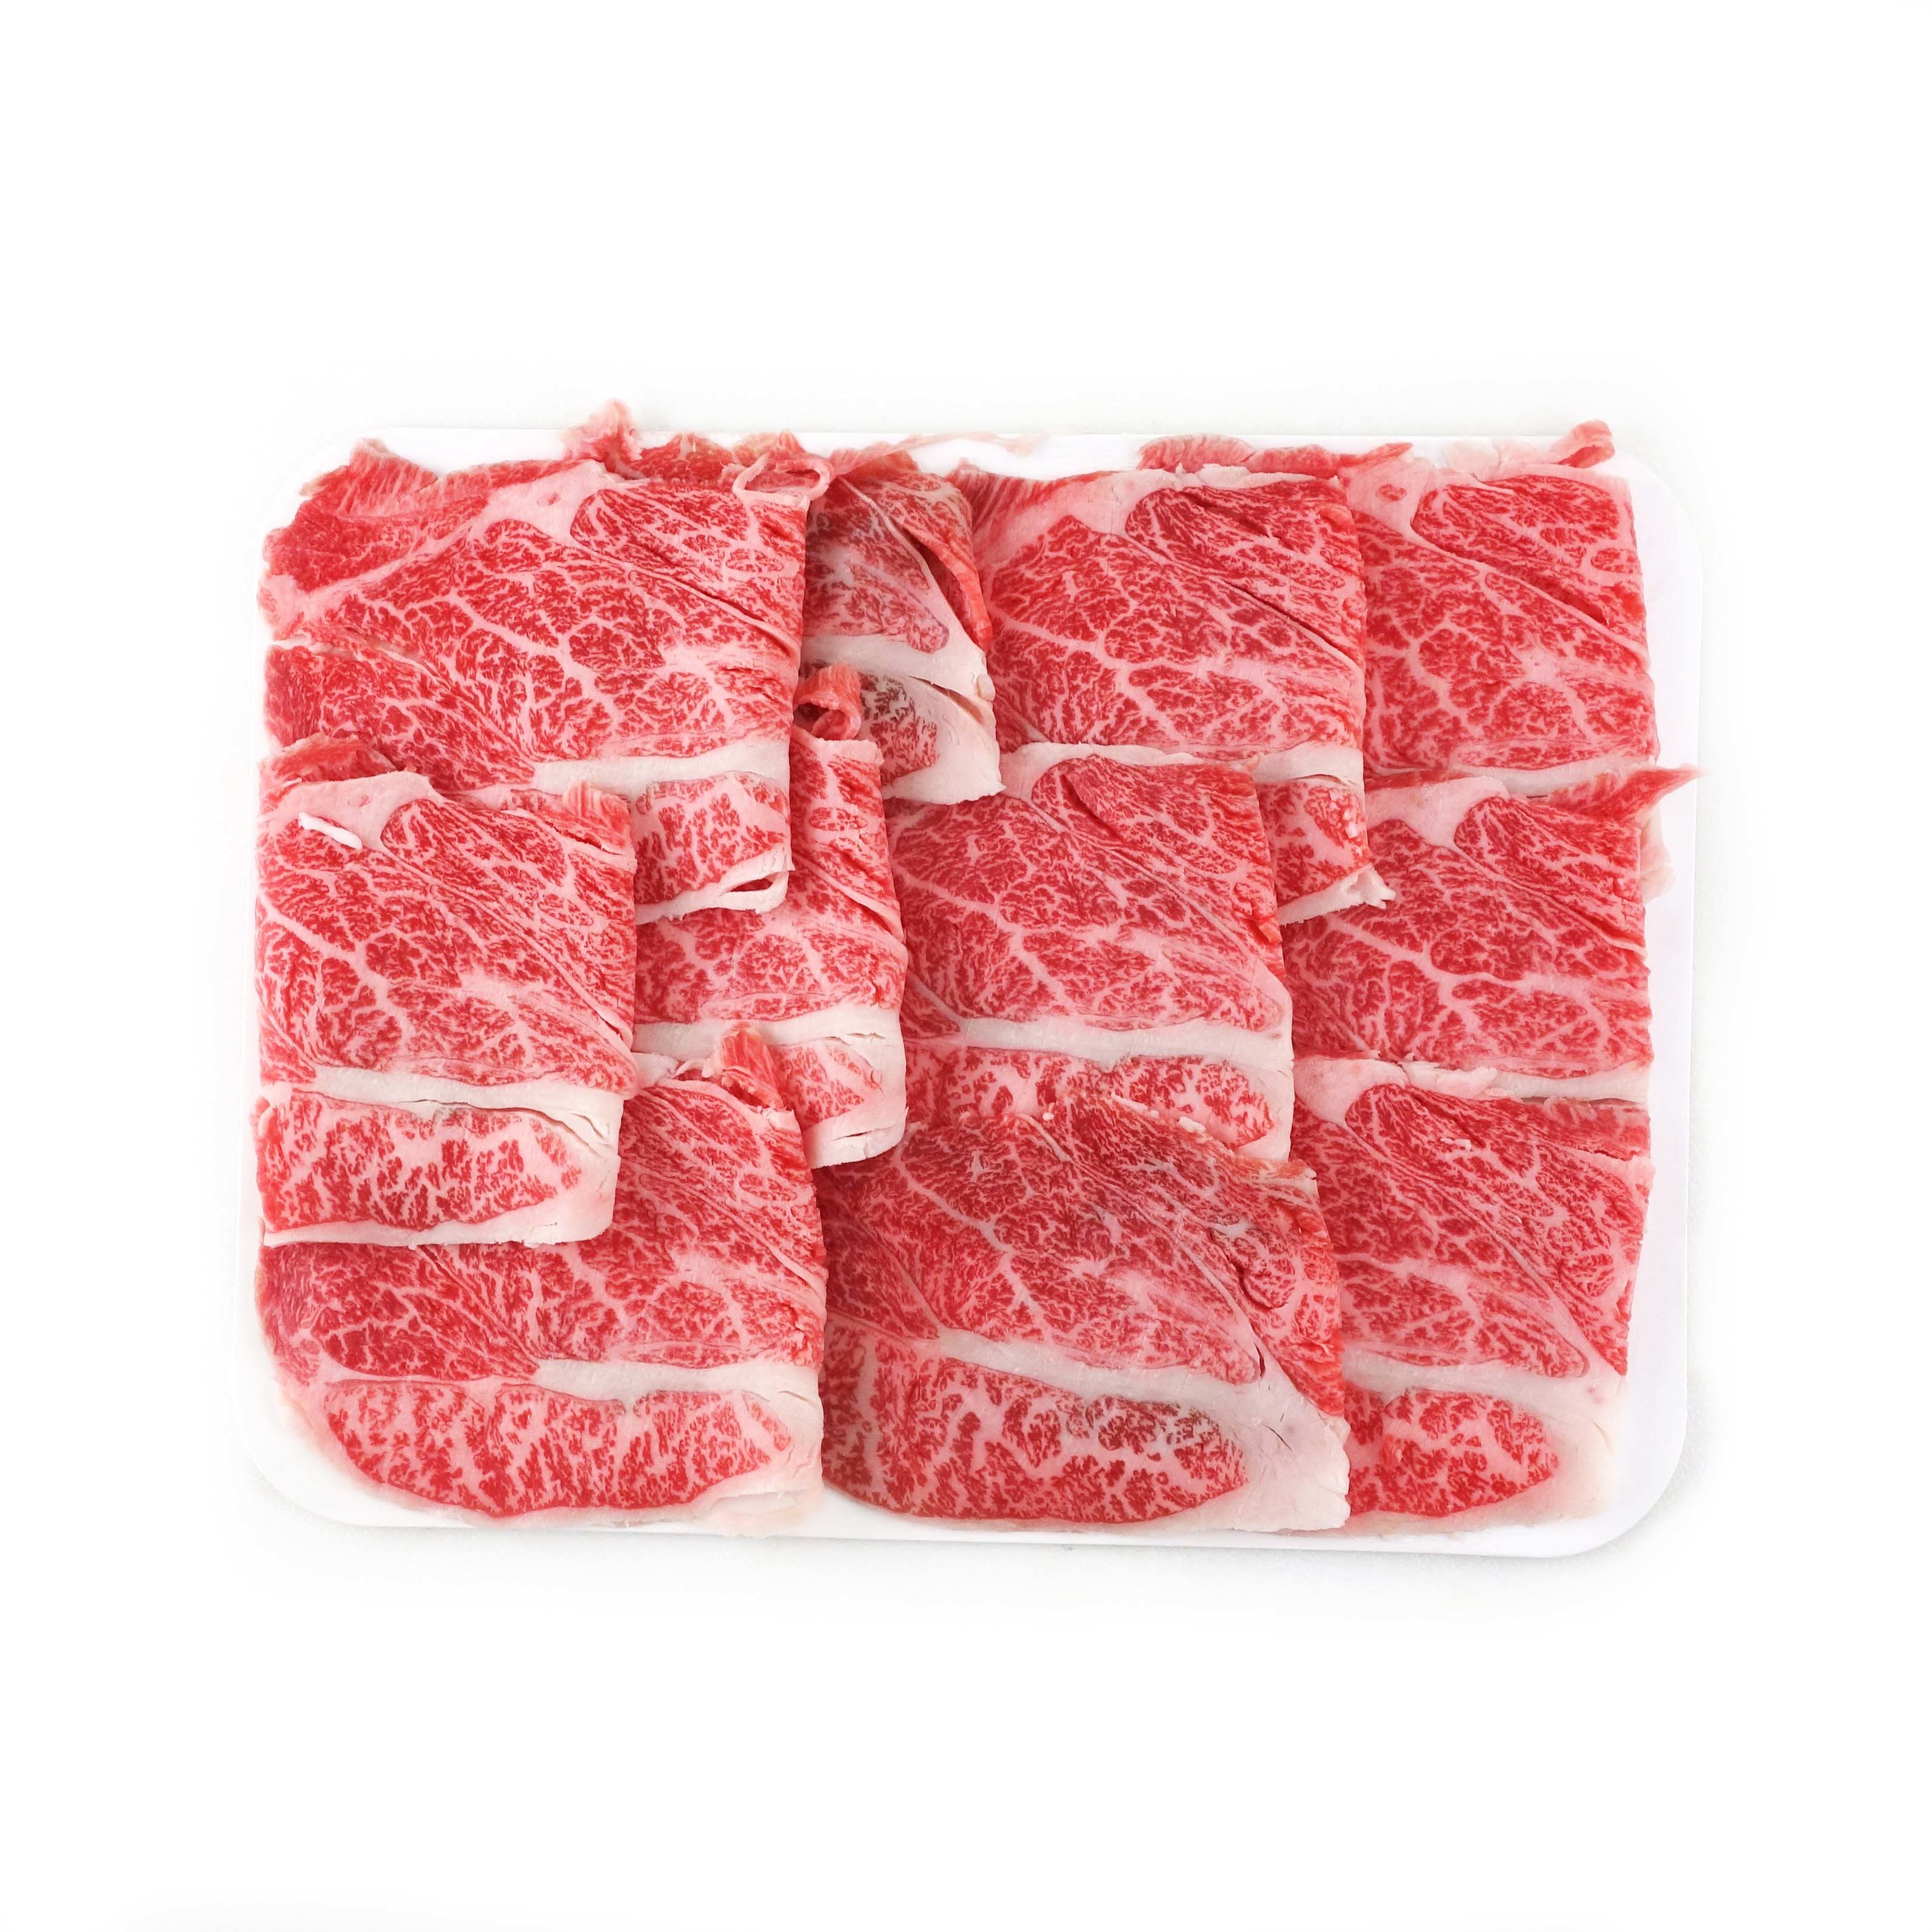 Frozen Japanese Wagyu Beef A5 Hot Pot 150g*